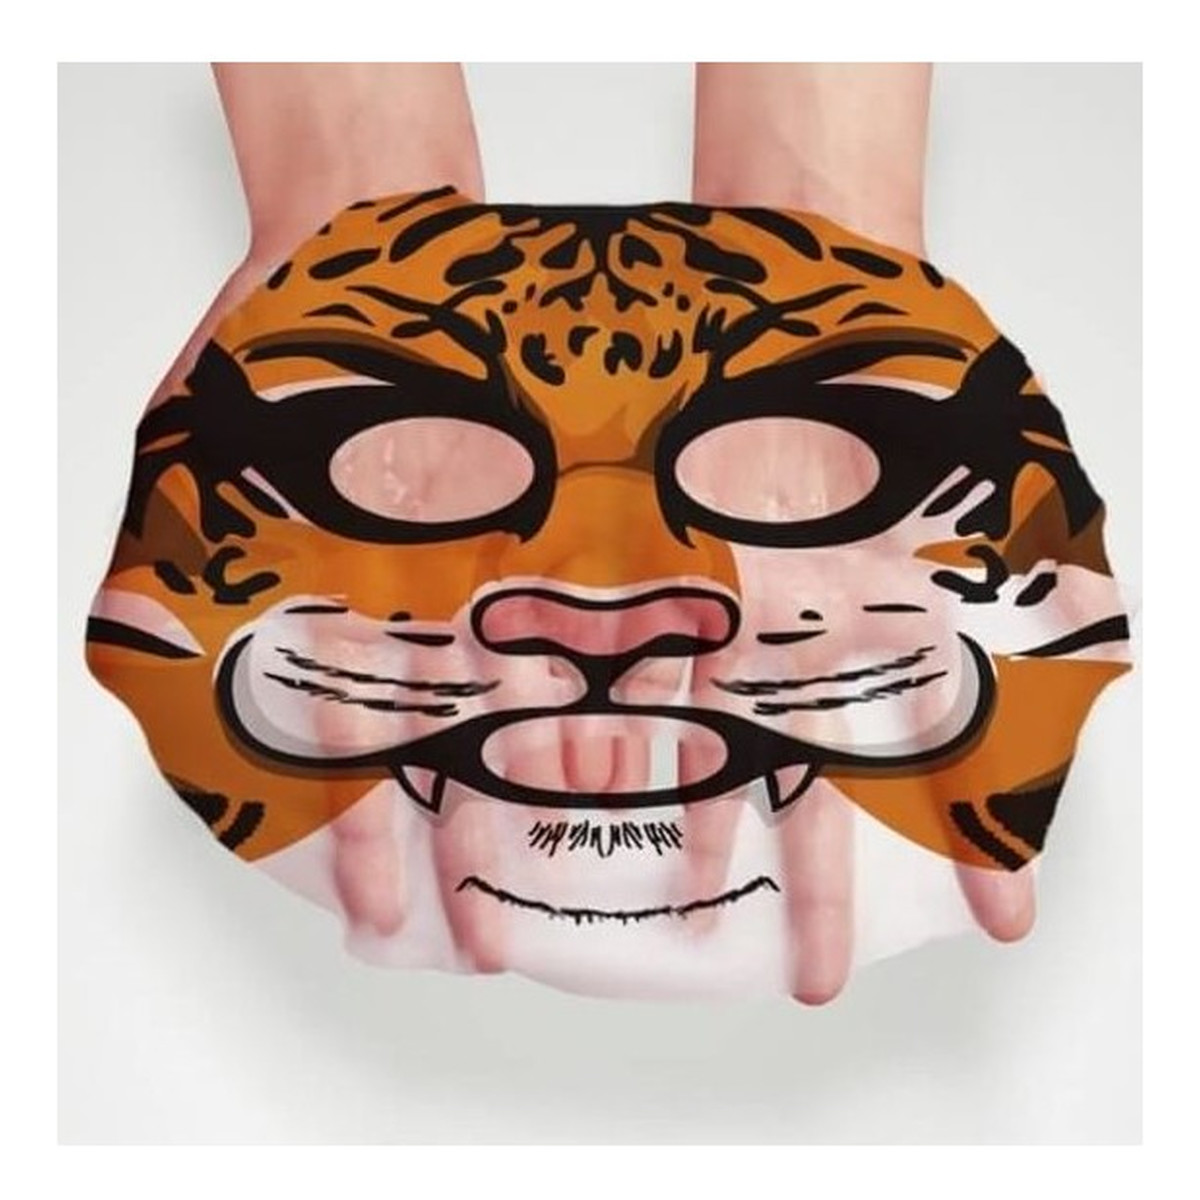 Bioaqua Animal Tiger Supple Mask Nawilżająca Maska w Płacie Z Wizerunkiem Tygrysa 30g